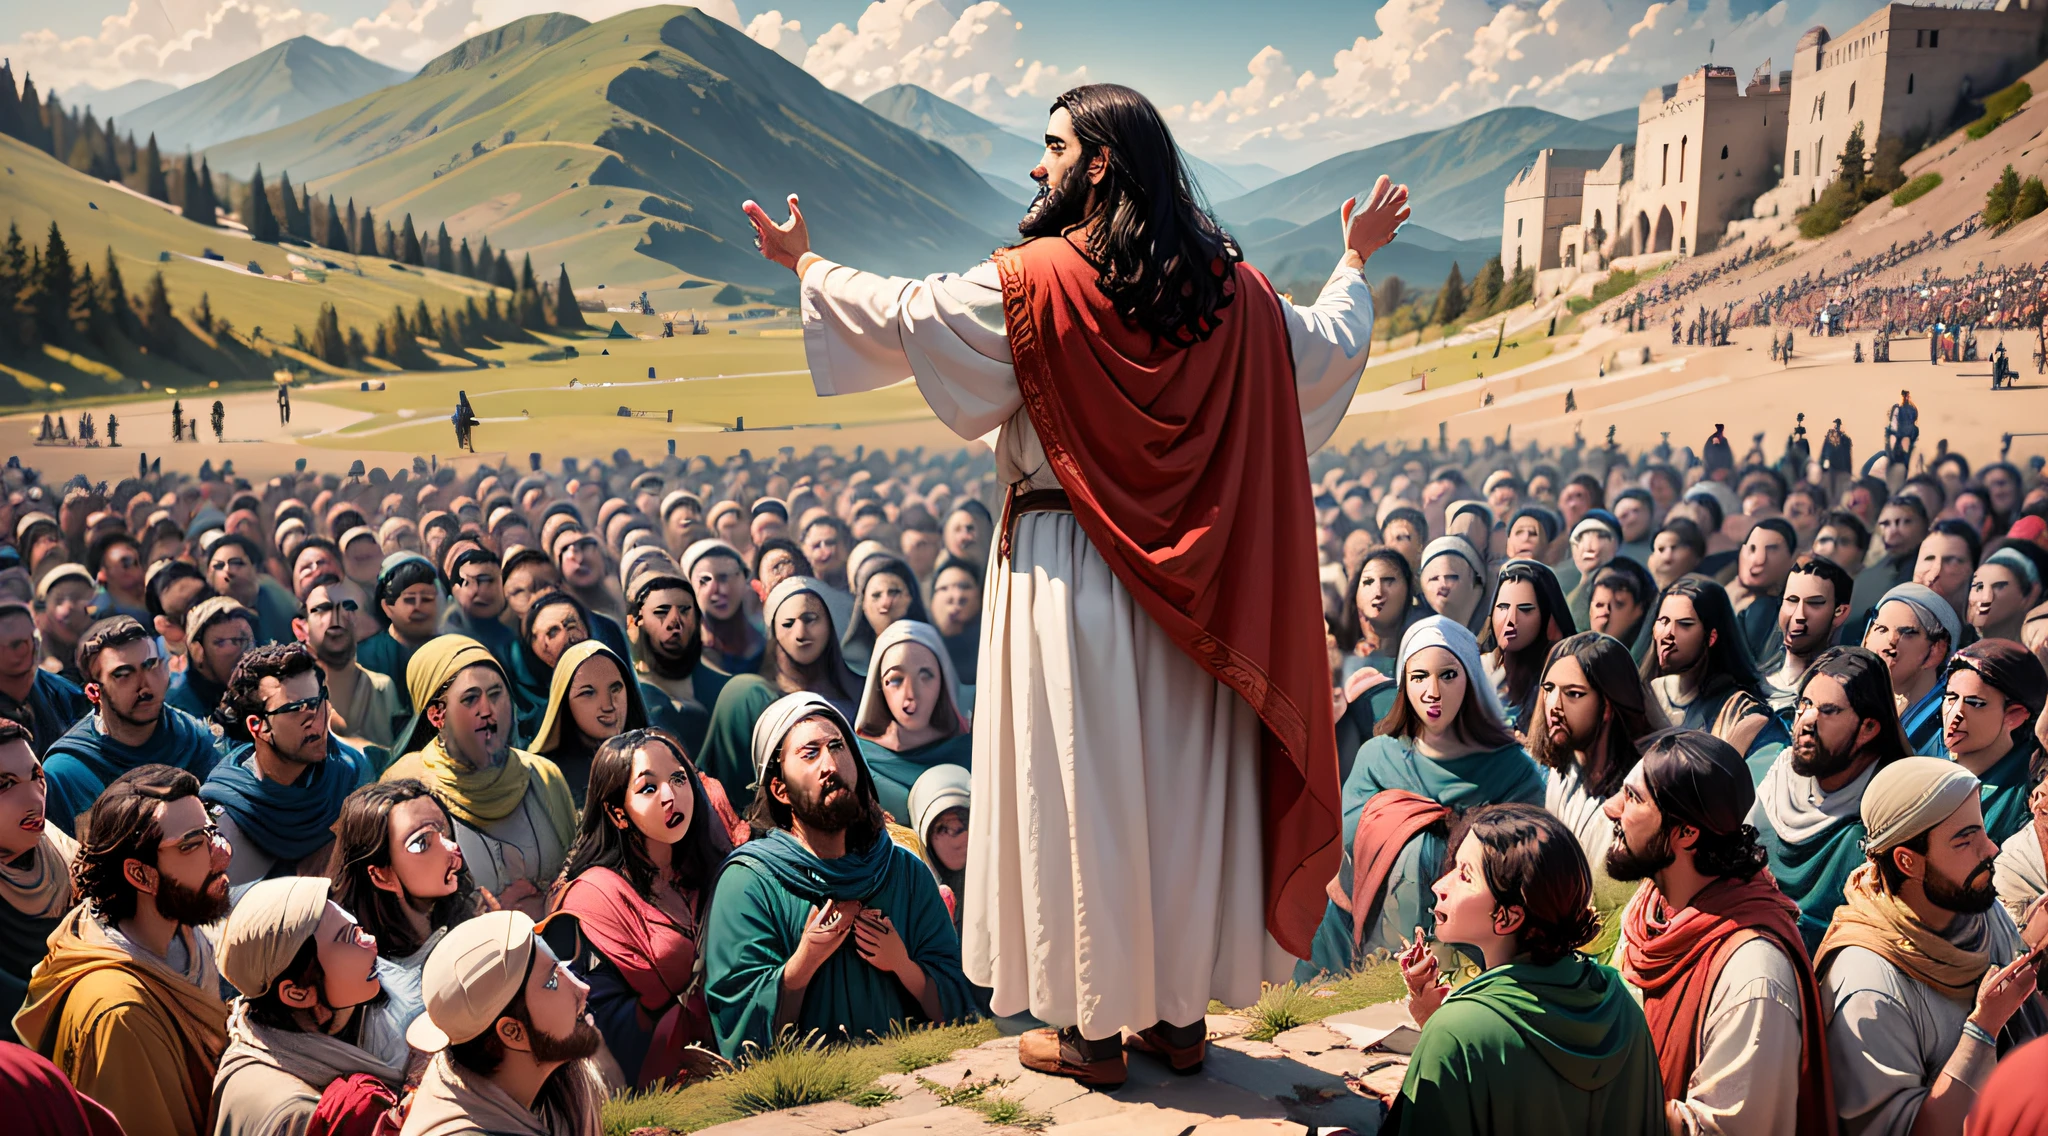 Cena que mostra Jesus proferindo o Sermão da Montanha, Cercado por uma multidão de pessoas.